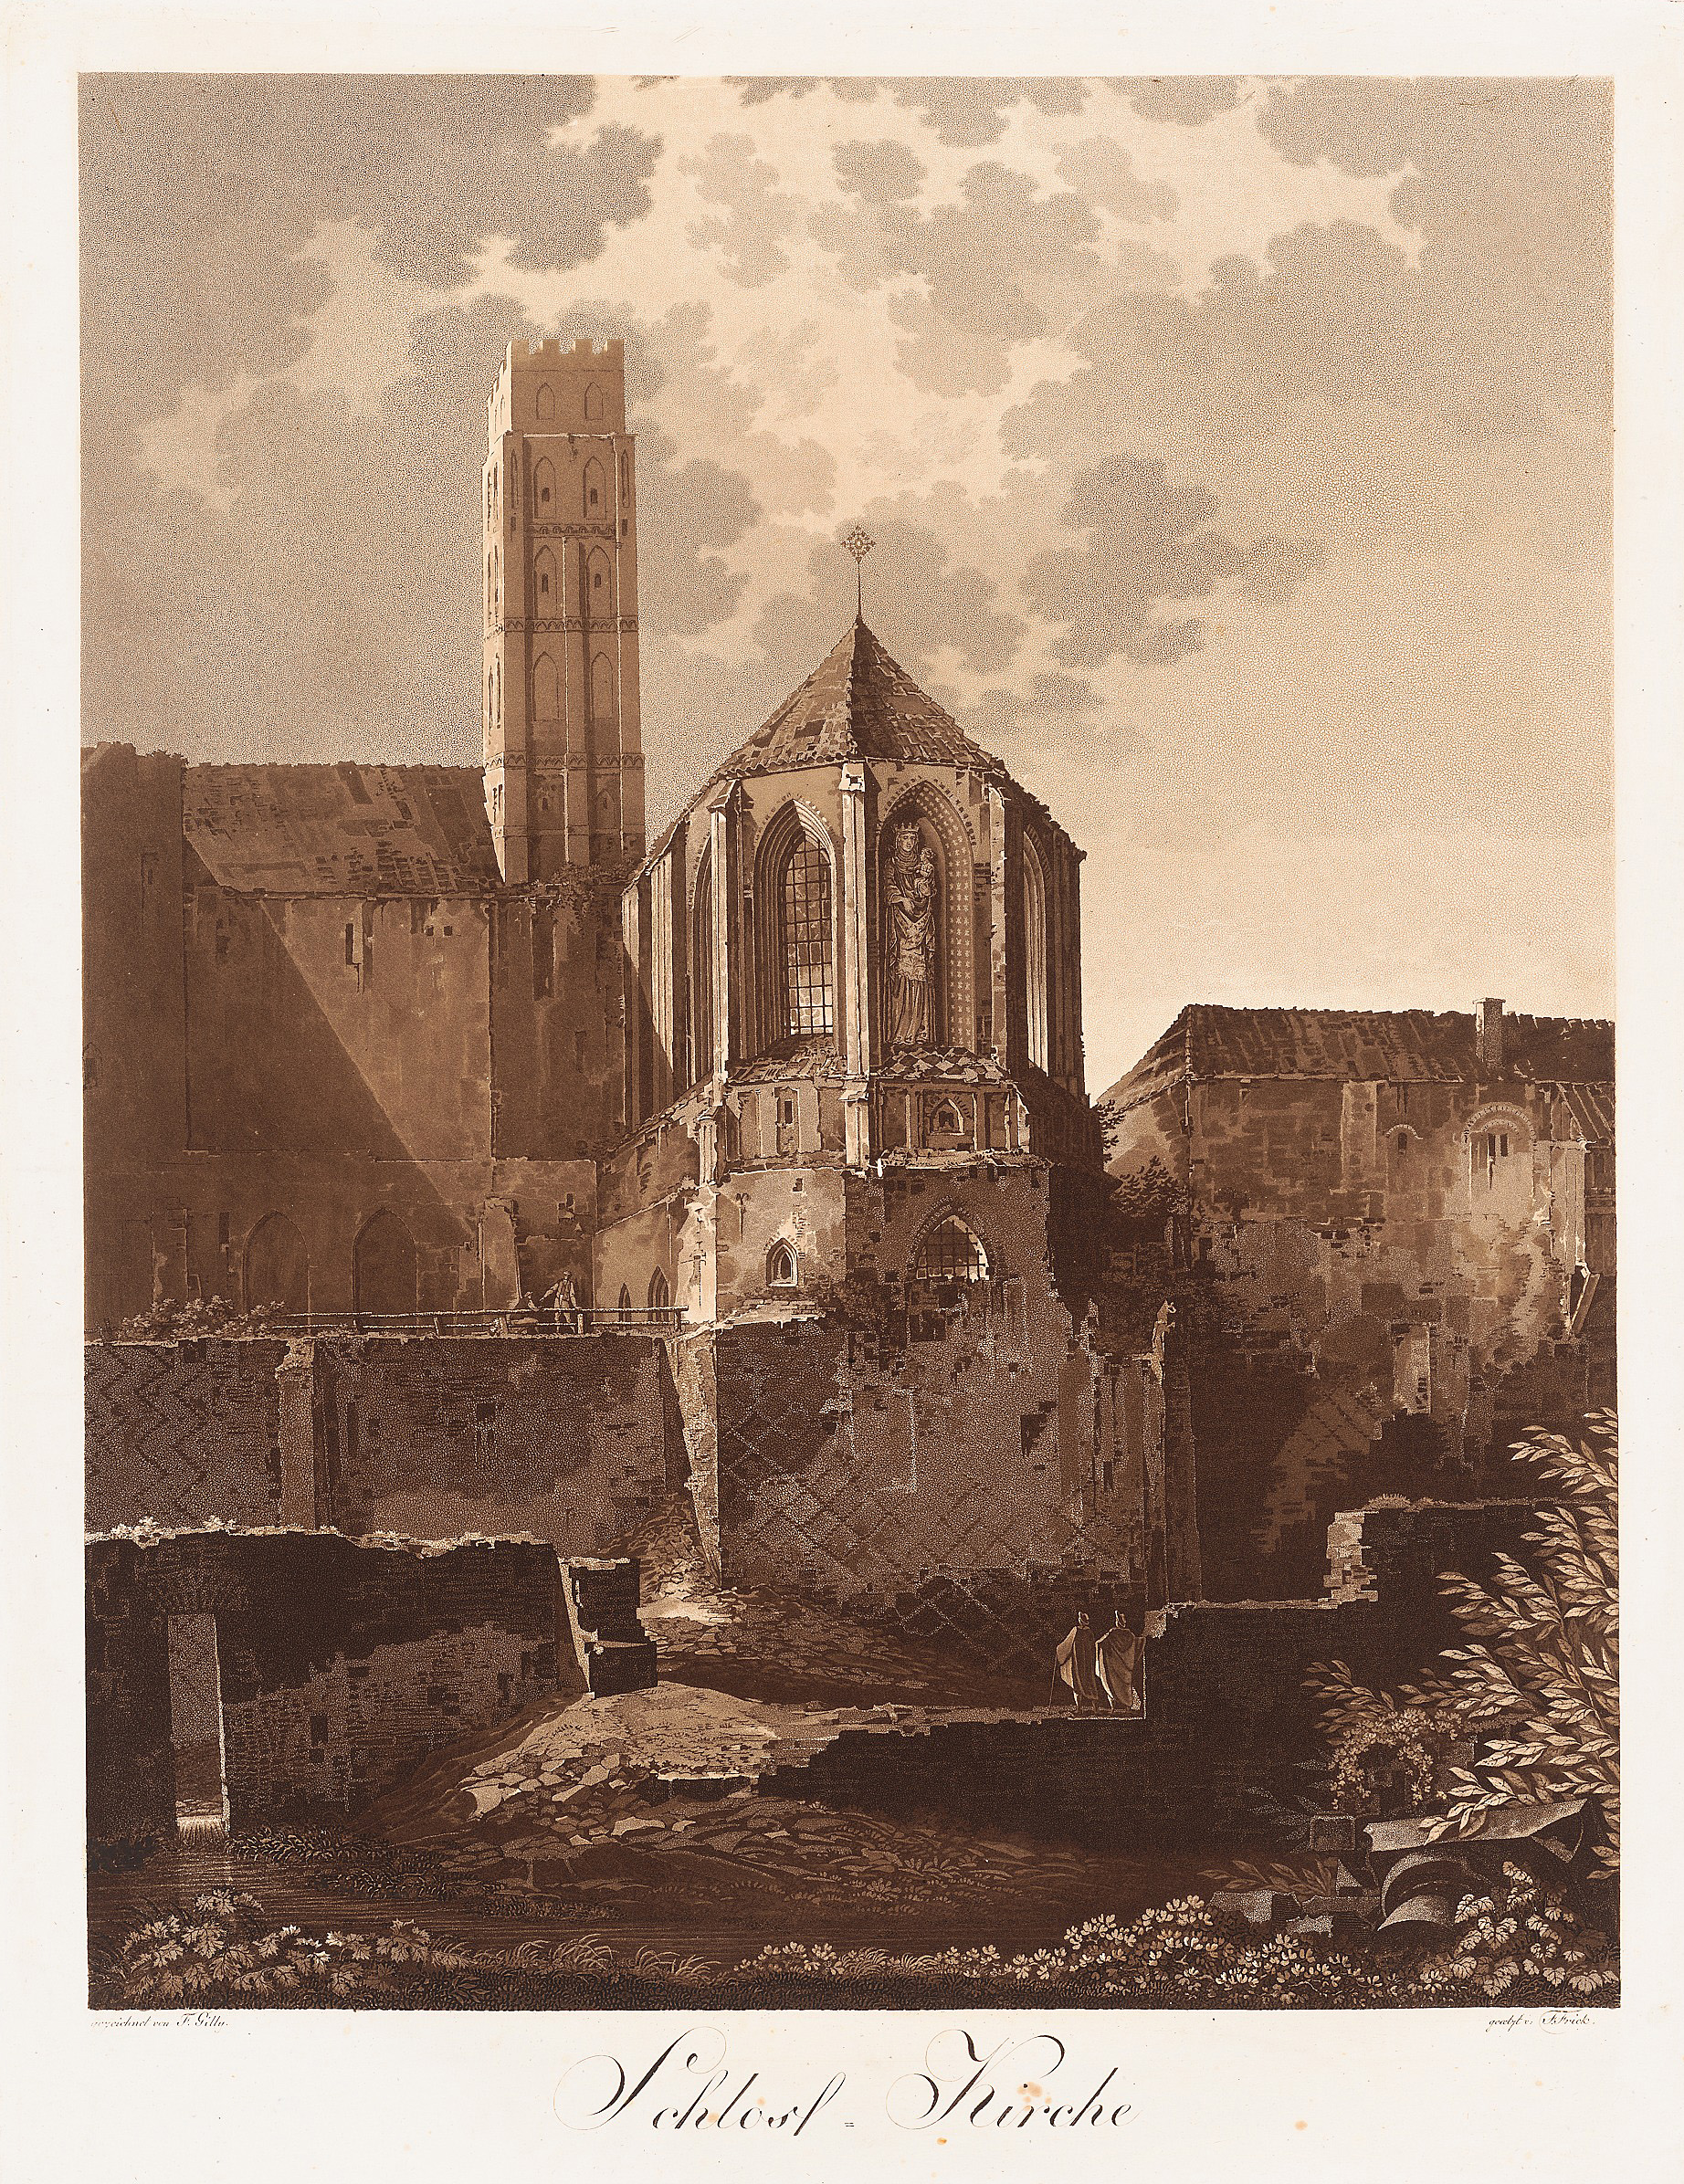 Das Bild zeigt die halb verfallene Marienburg (Malbork) in einer Ansicht von Friedrich Gilly.